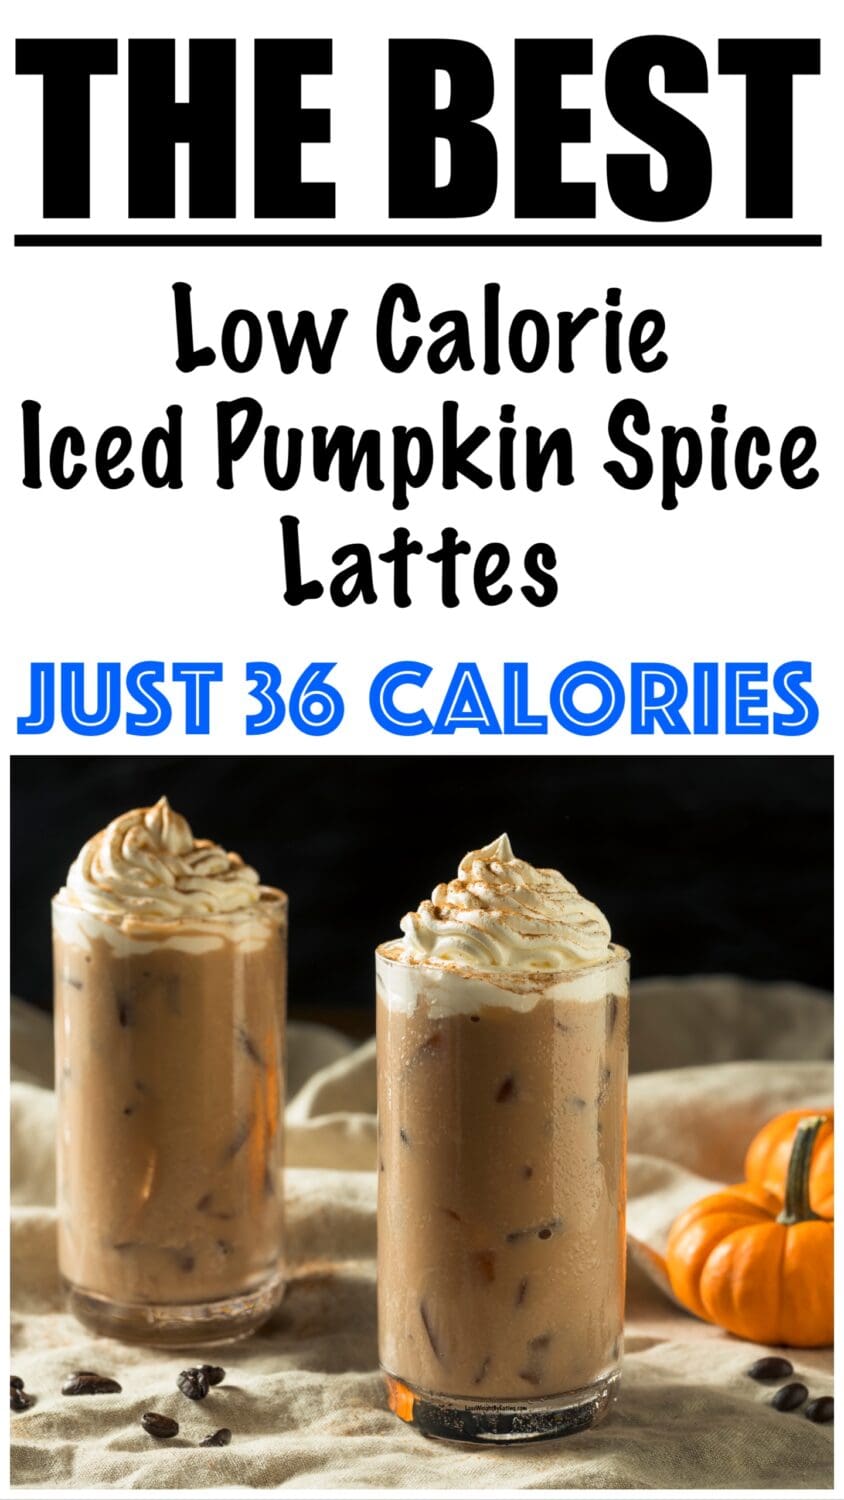 Low Calorie Iced Pumpkin Spice Latte Recipe